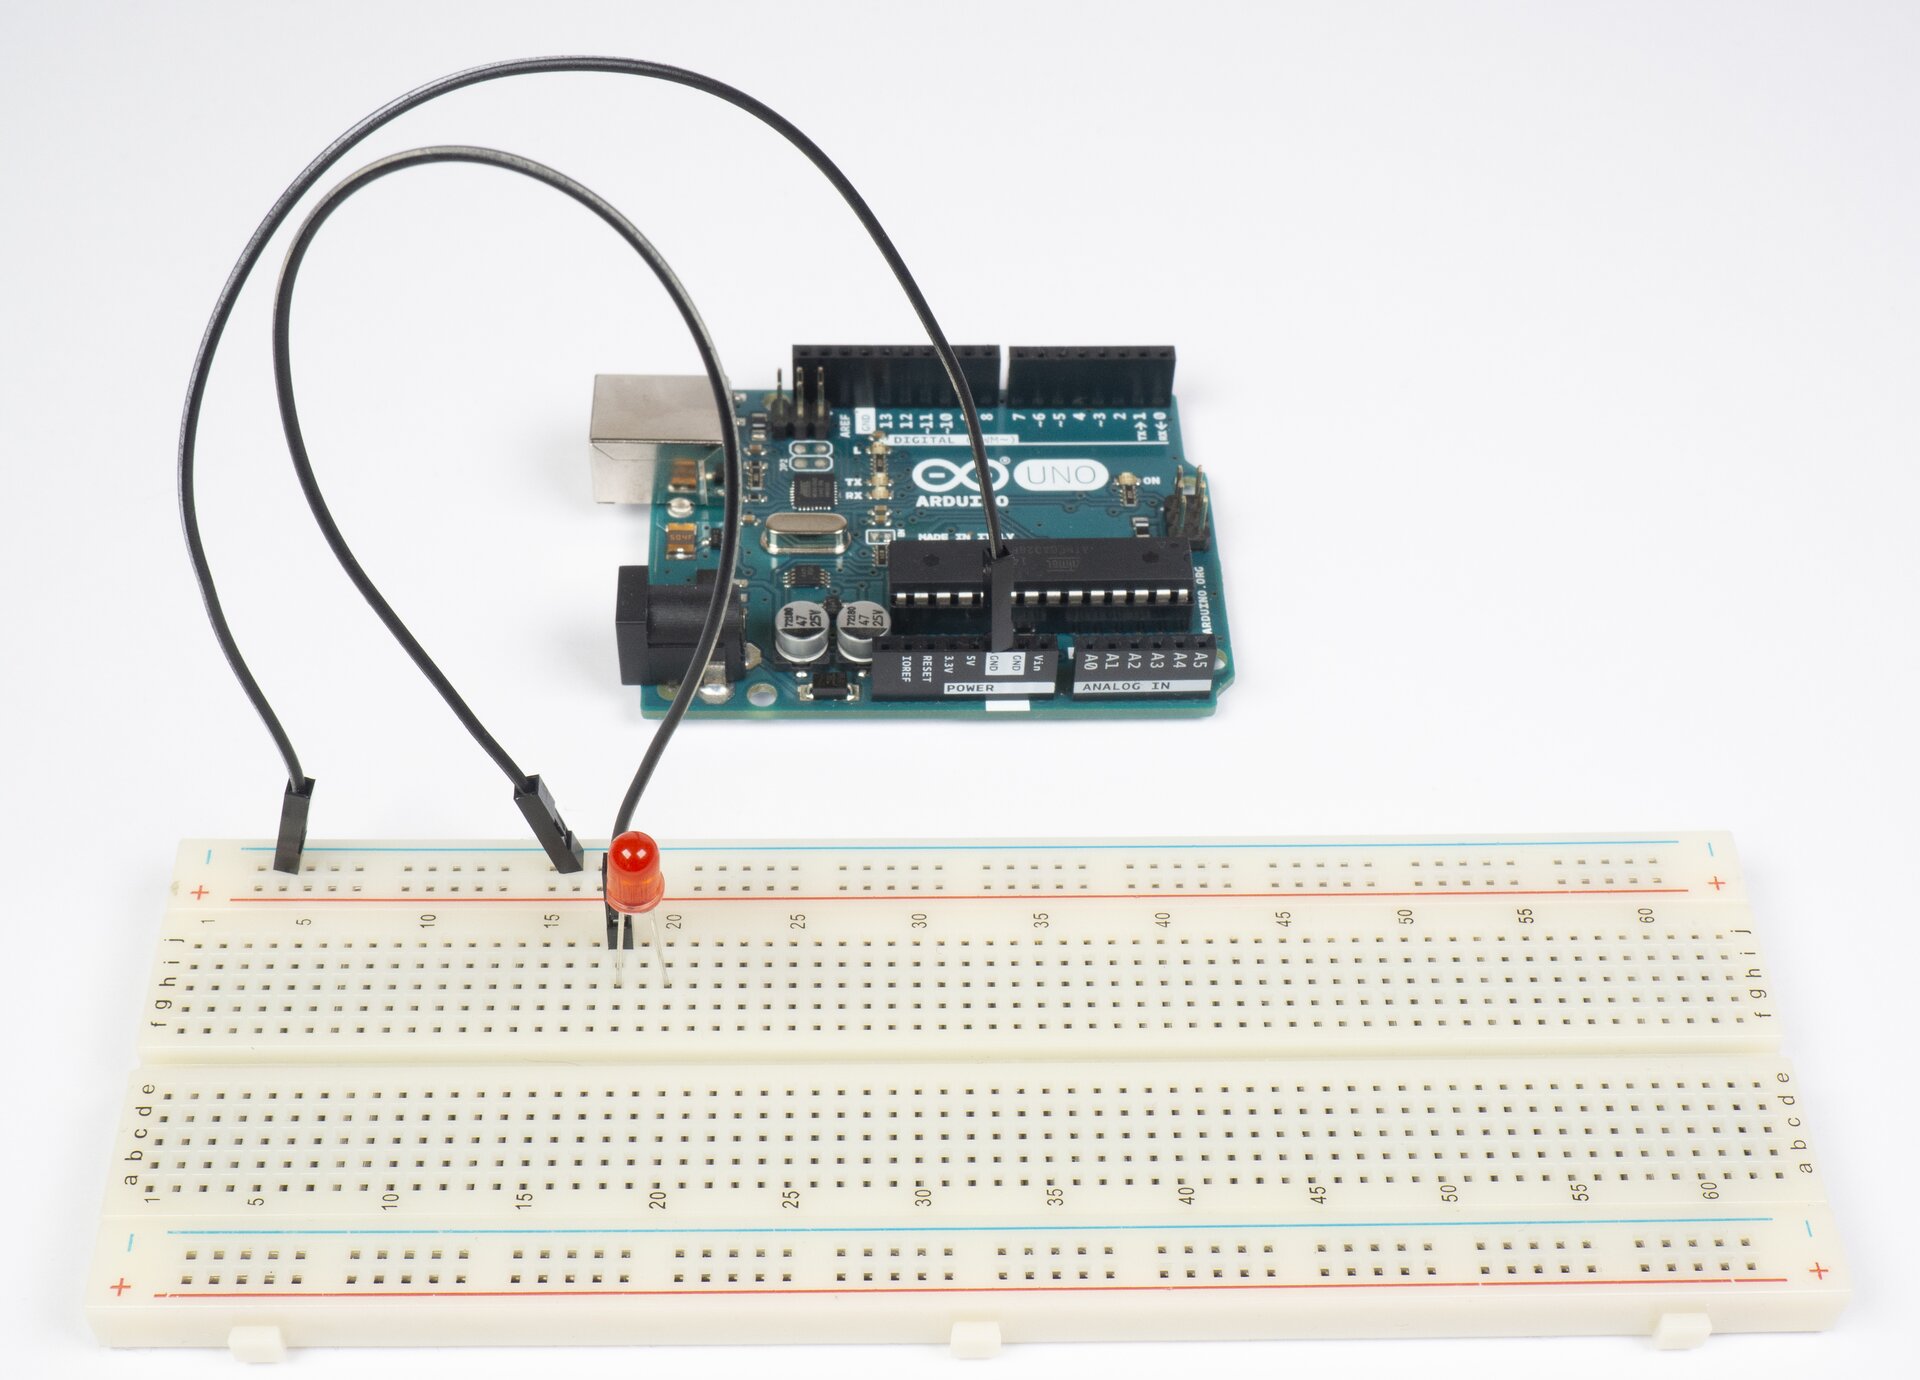 Zdjęcie przedstawia płytkę Arduino oraz sześćdziesięciowierszową płytkę stykową. Wiersze płytki stykowej podpisano co pięć zaczynając od 1. Po prawej i po lewej stronie podpisano poszczególne kolumny. Na górnym obszarze: j i h g f. Na dolnym obszarze: e d c b a. Na płytce stykowej znajduje się czerwona dioda LED oraz czarny przewód. Ze złącza GND Arduino wyprowadzono czarny przewód, którego koniec umieszczono w drugim otworze szyny z oznaczeniem minus. Jeden koniec drugiego czarnego przewodu umieszczono w otworze na szynie minus, a drugi koniec umieszczono w kolumnie j w wierszu 18. Jedną nogę diody LED umieszczono w kolumnie h w wierszu 18, a drugą nogę w kolumnie h w wierszu 20.